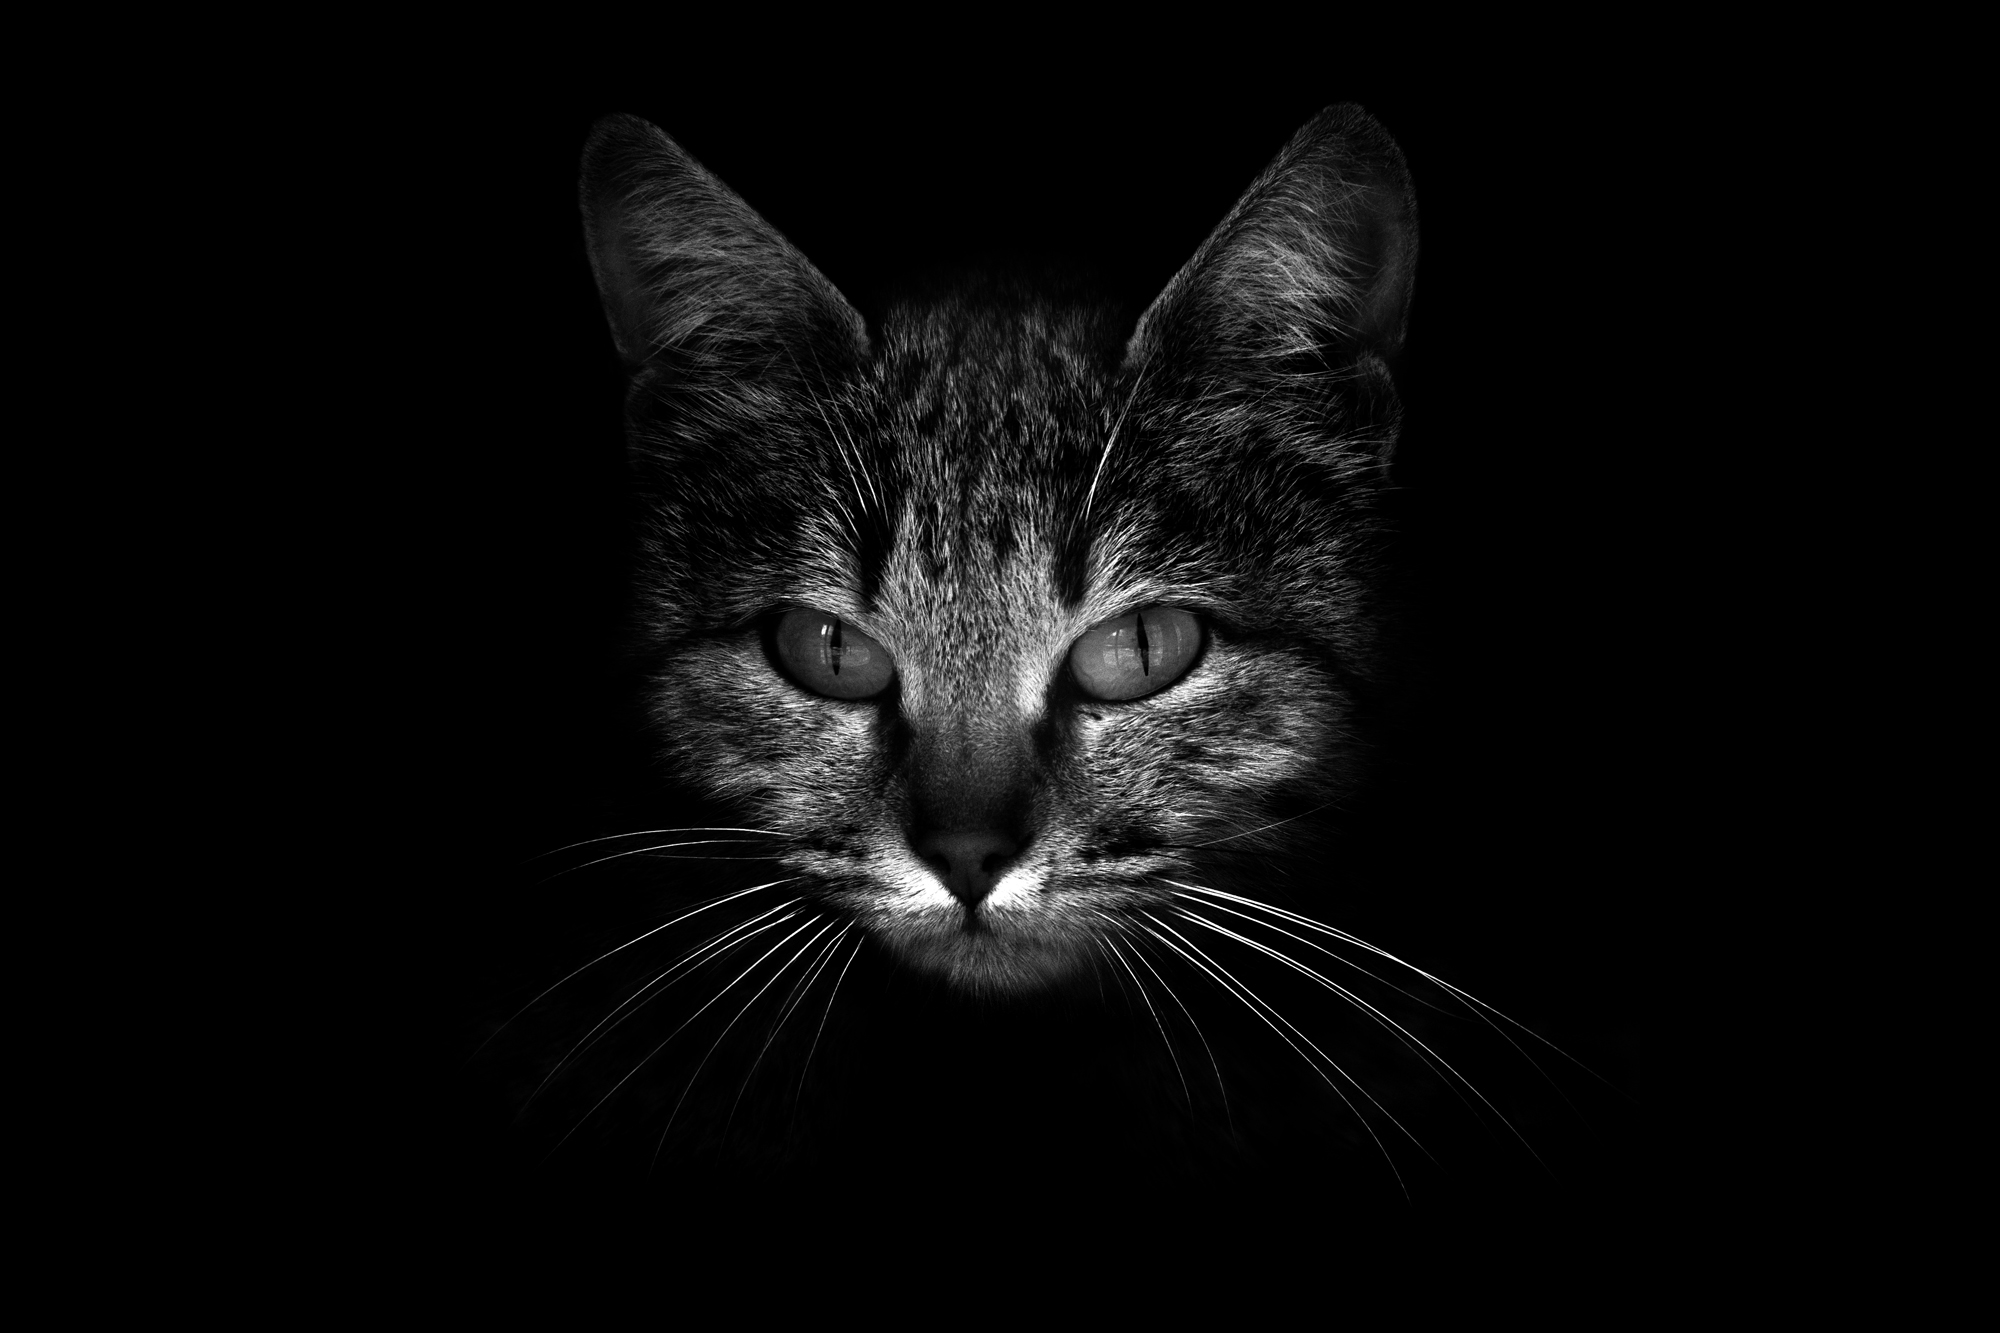 Les animaux en noir & blanc par Guillaume Mordacq